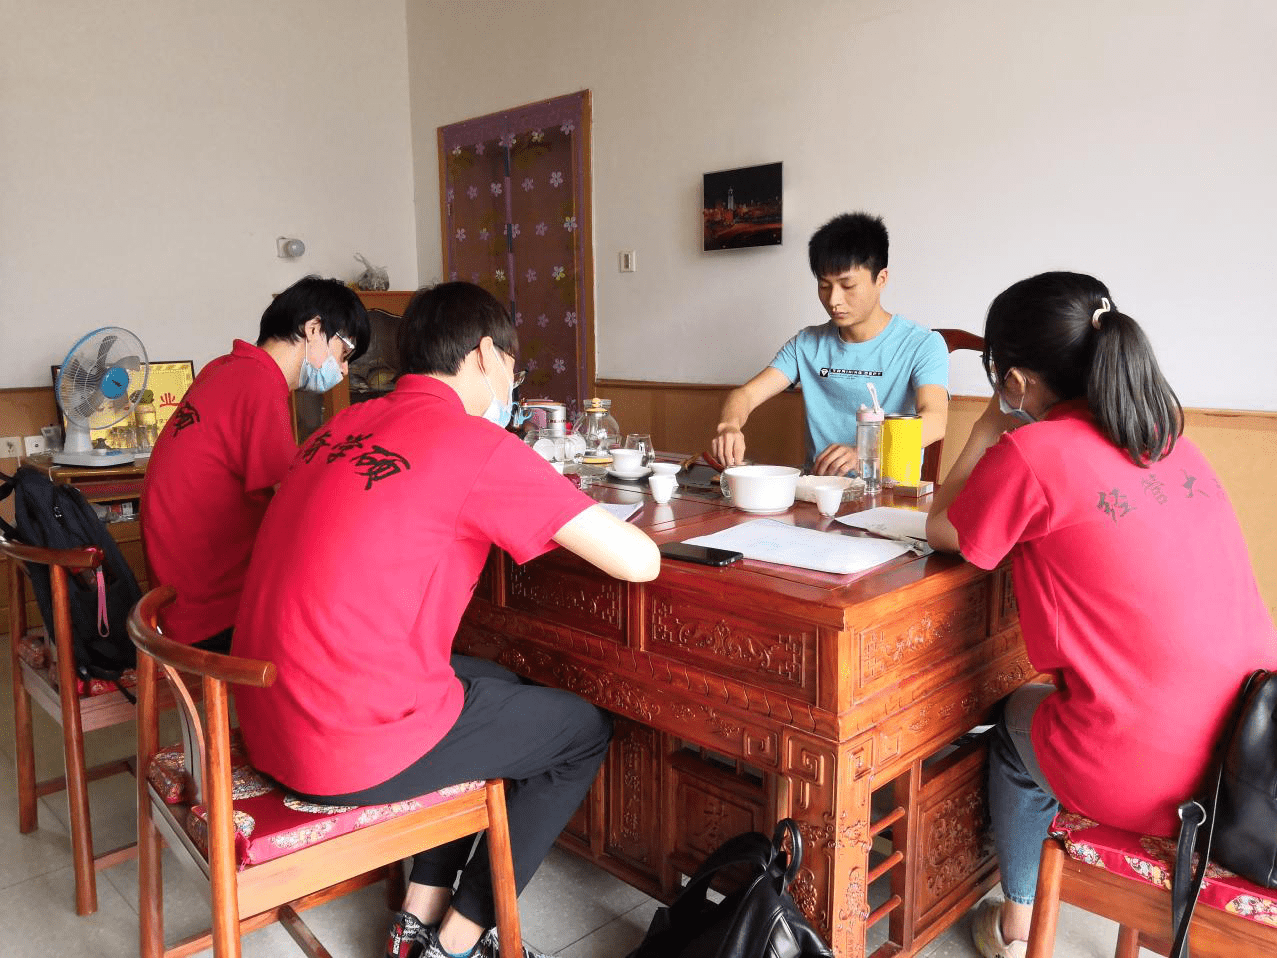 长安大学赴陕西商洛暑期社会实践队"提质产业扶贫,决胜脱贫攻坚"摄影